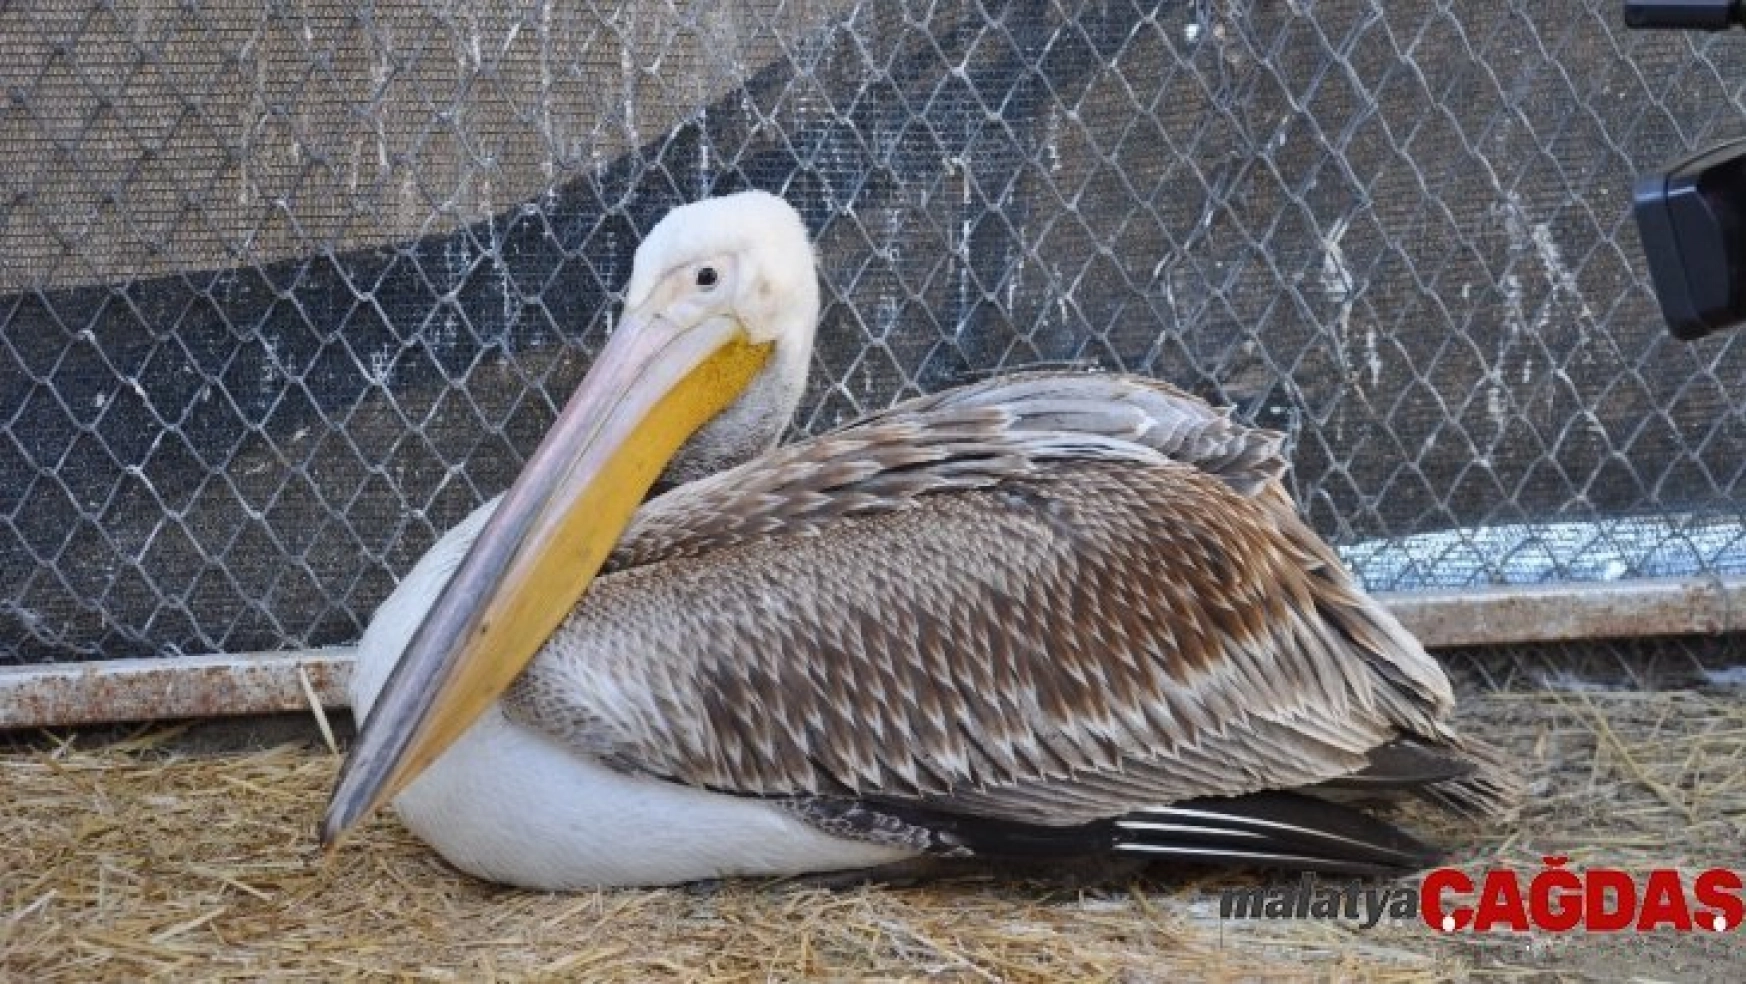 Göç yorgunu aç ve yaralı pelikan tedavi altına alındı